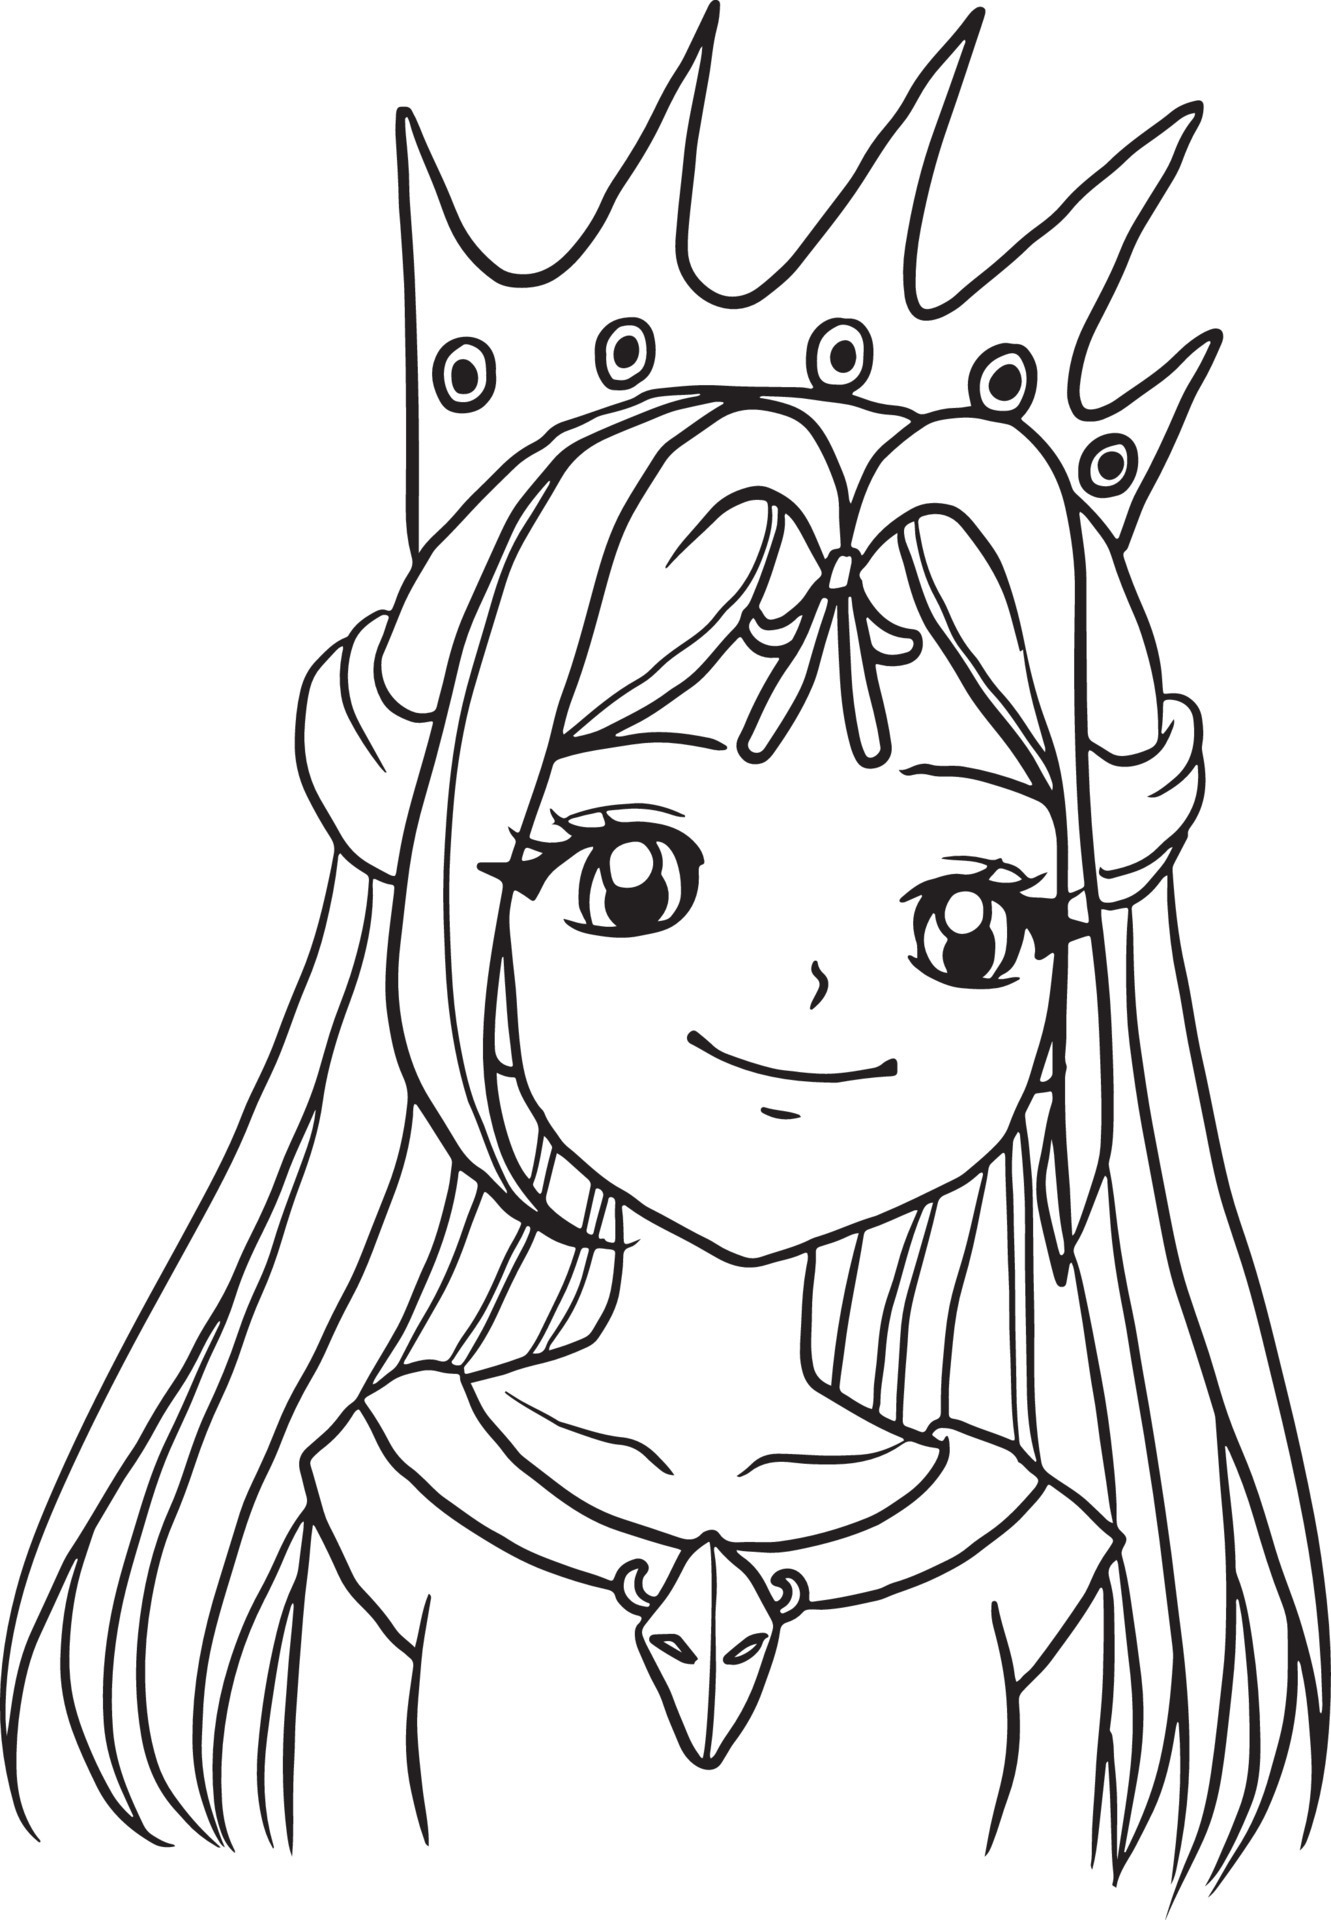 Princess cartoon doodle kawaii anime coloring page cute ...